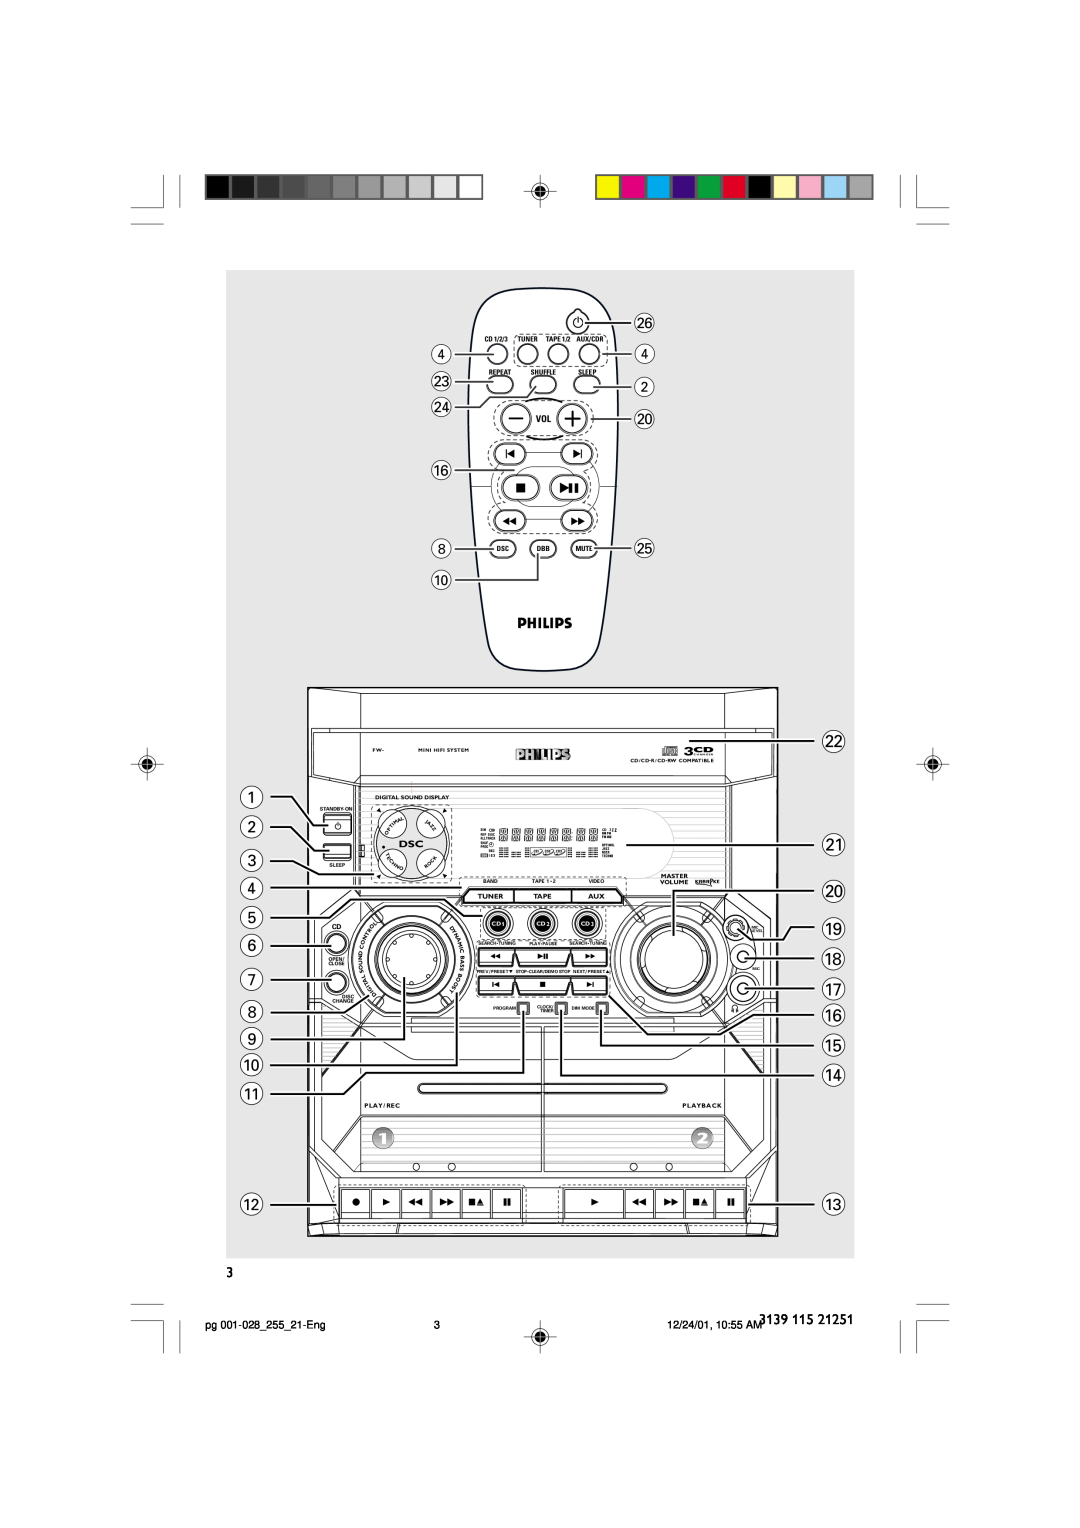 Philips C255 manual 